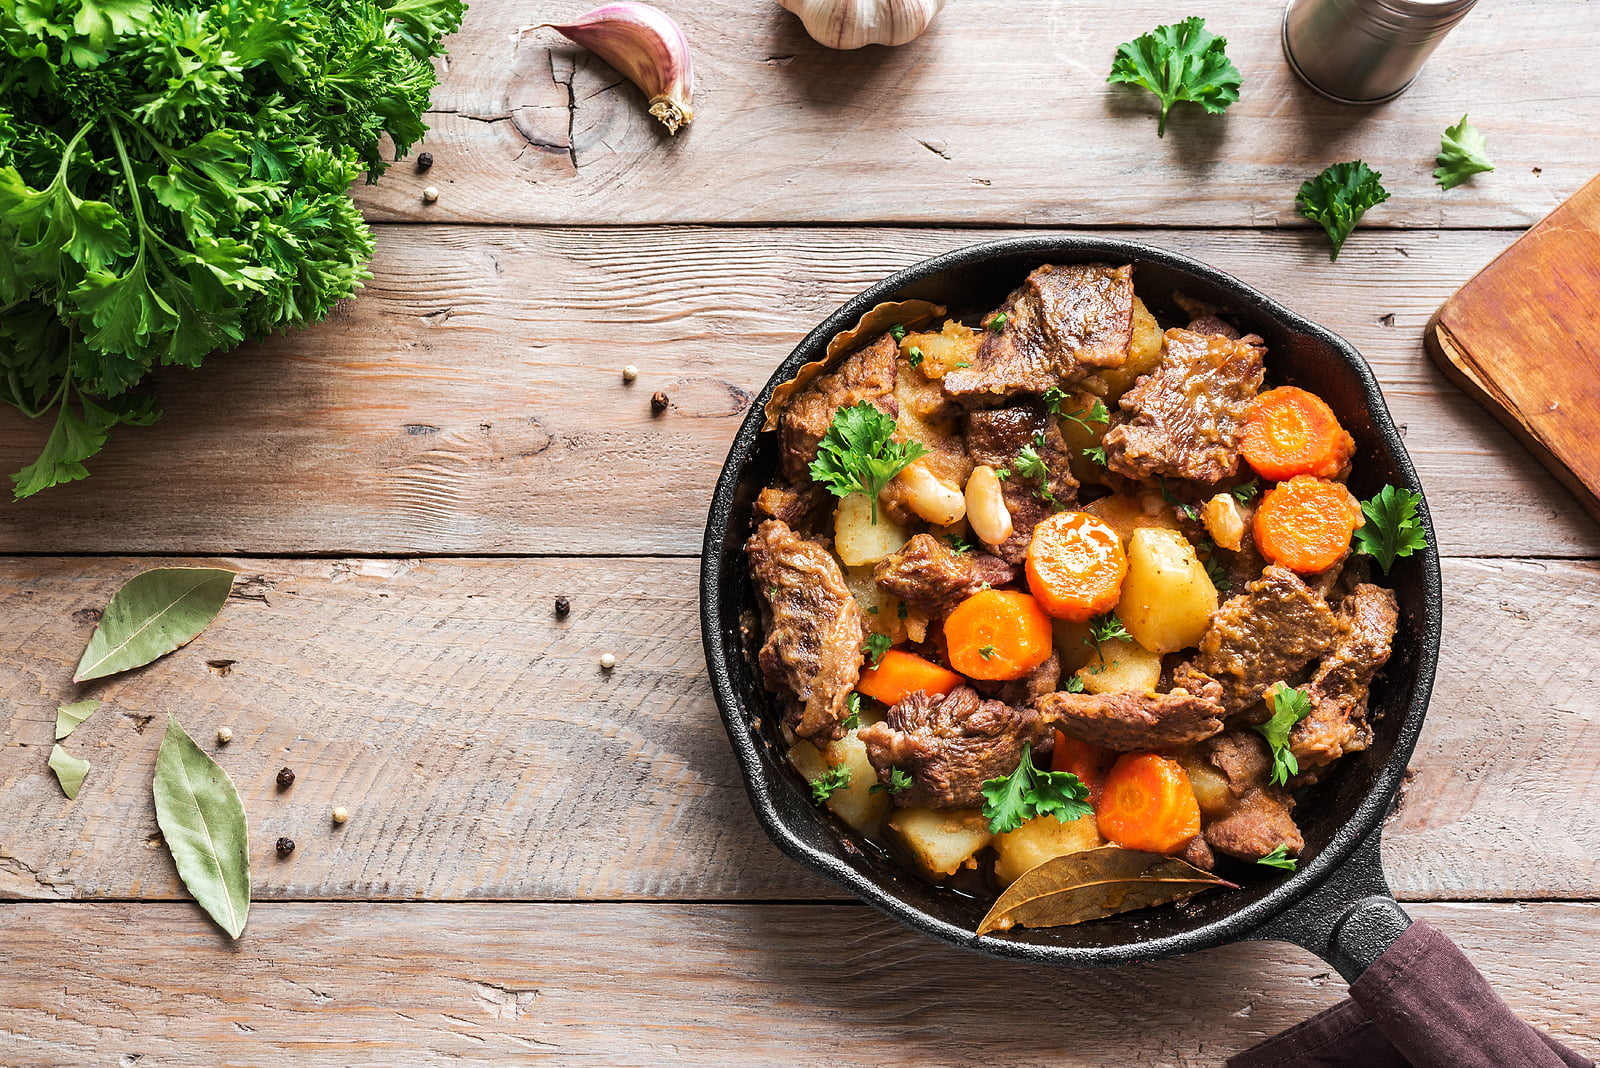 A healthy version of Sur La Table’s hearty beef stew